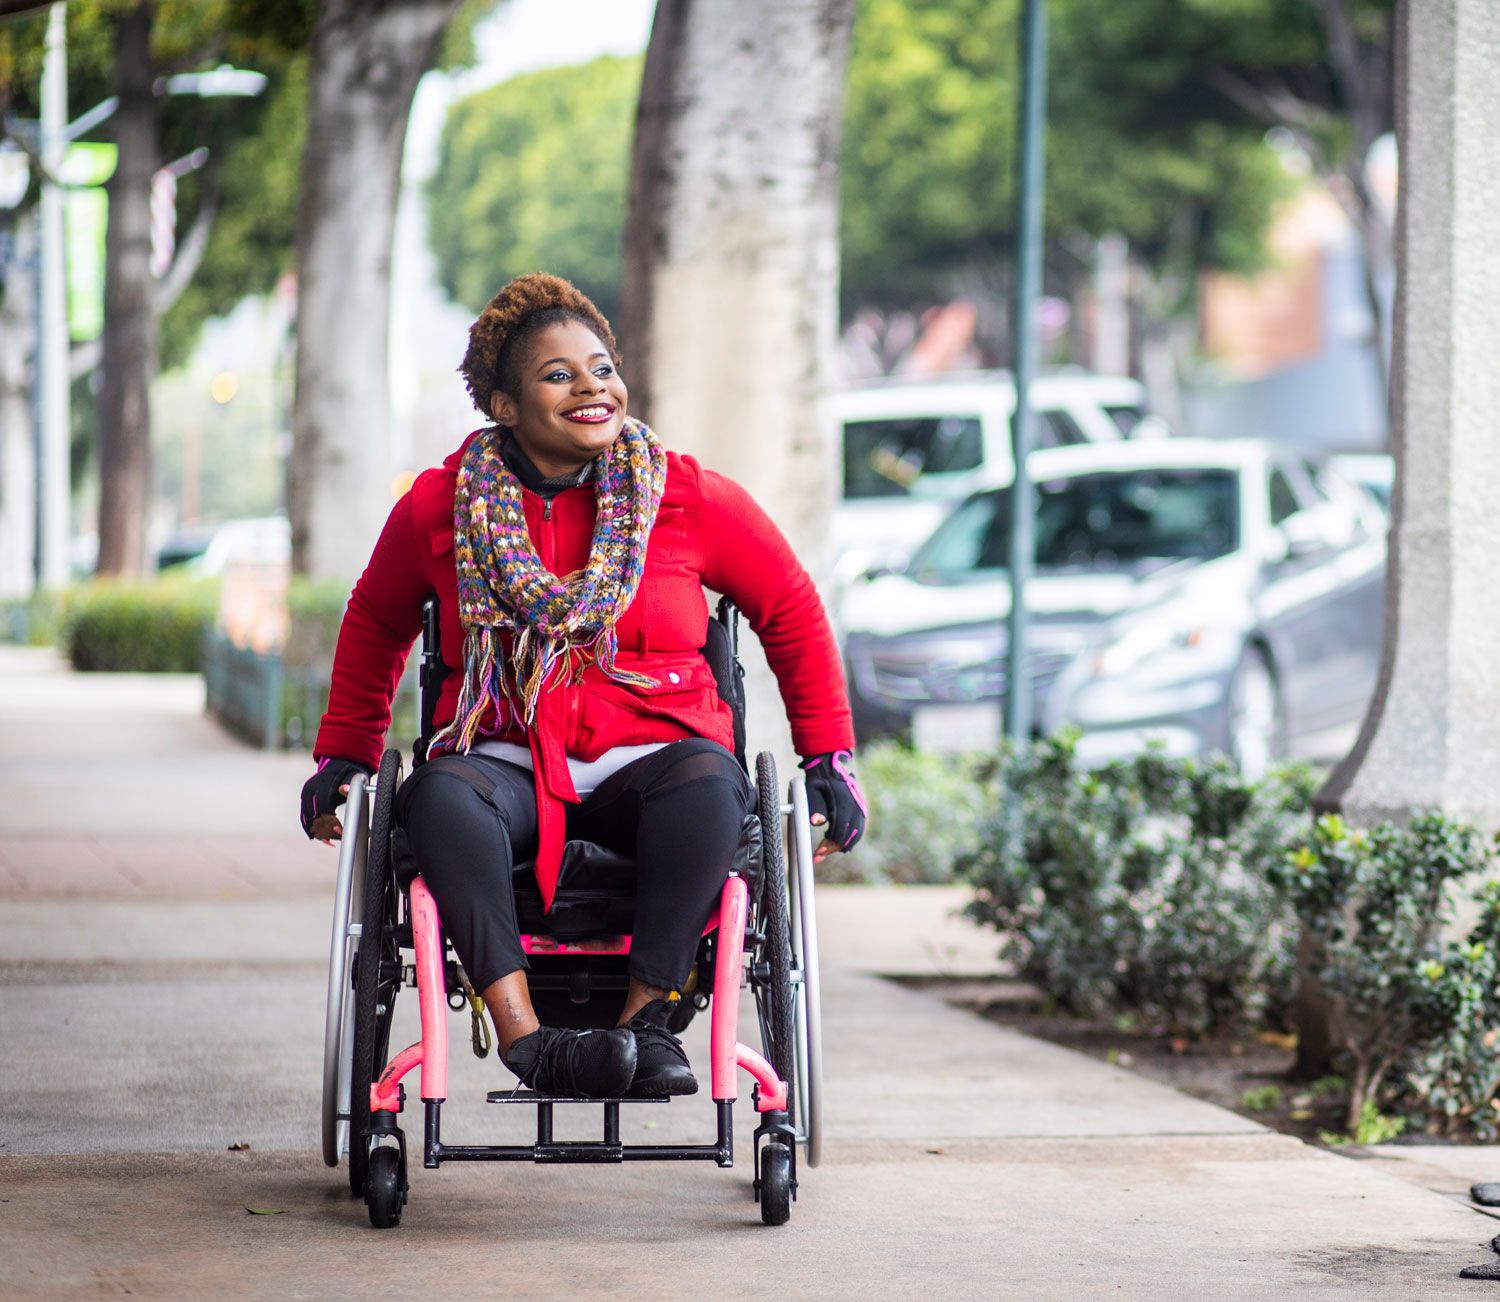 Woman going down sidewalk in a wheelchair